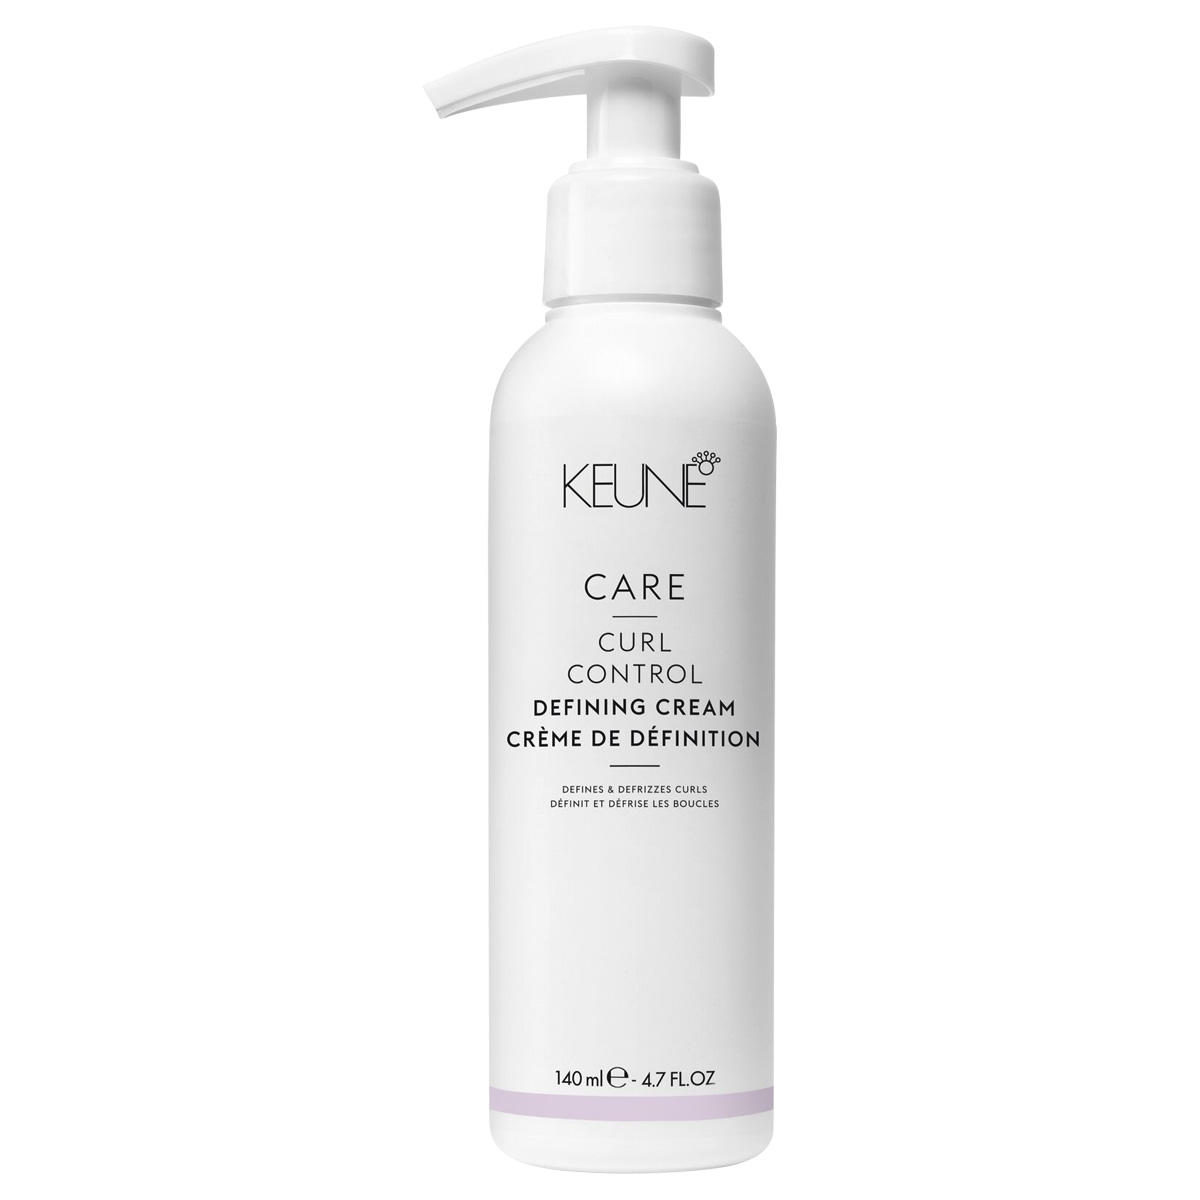 KEUNE CARE Curl Control Defining Cream 140 ml - 1